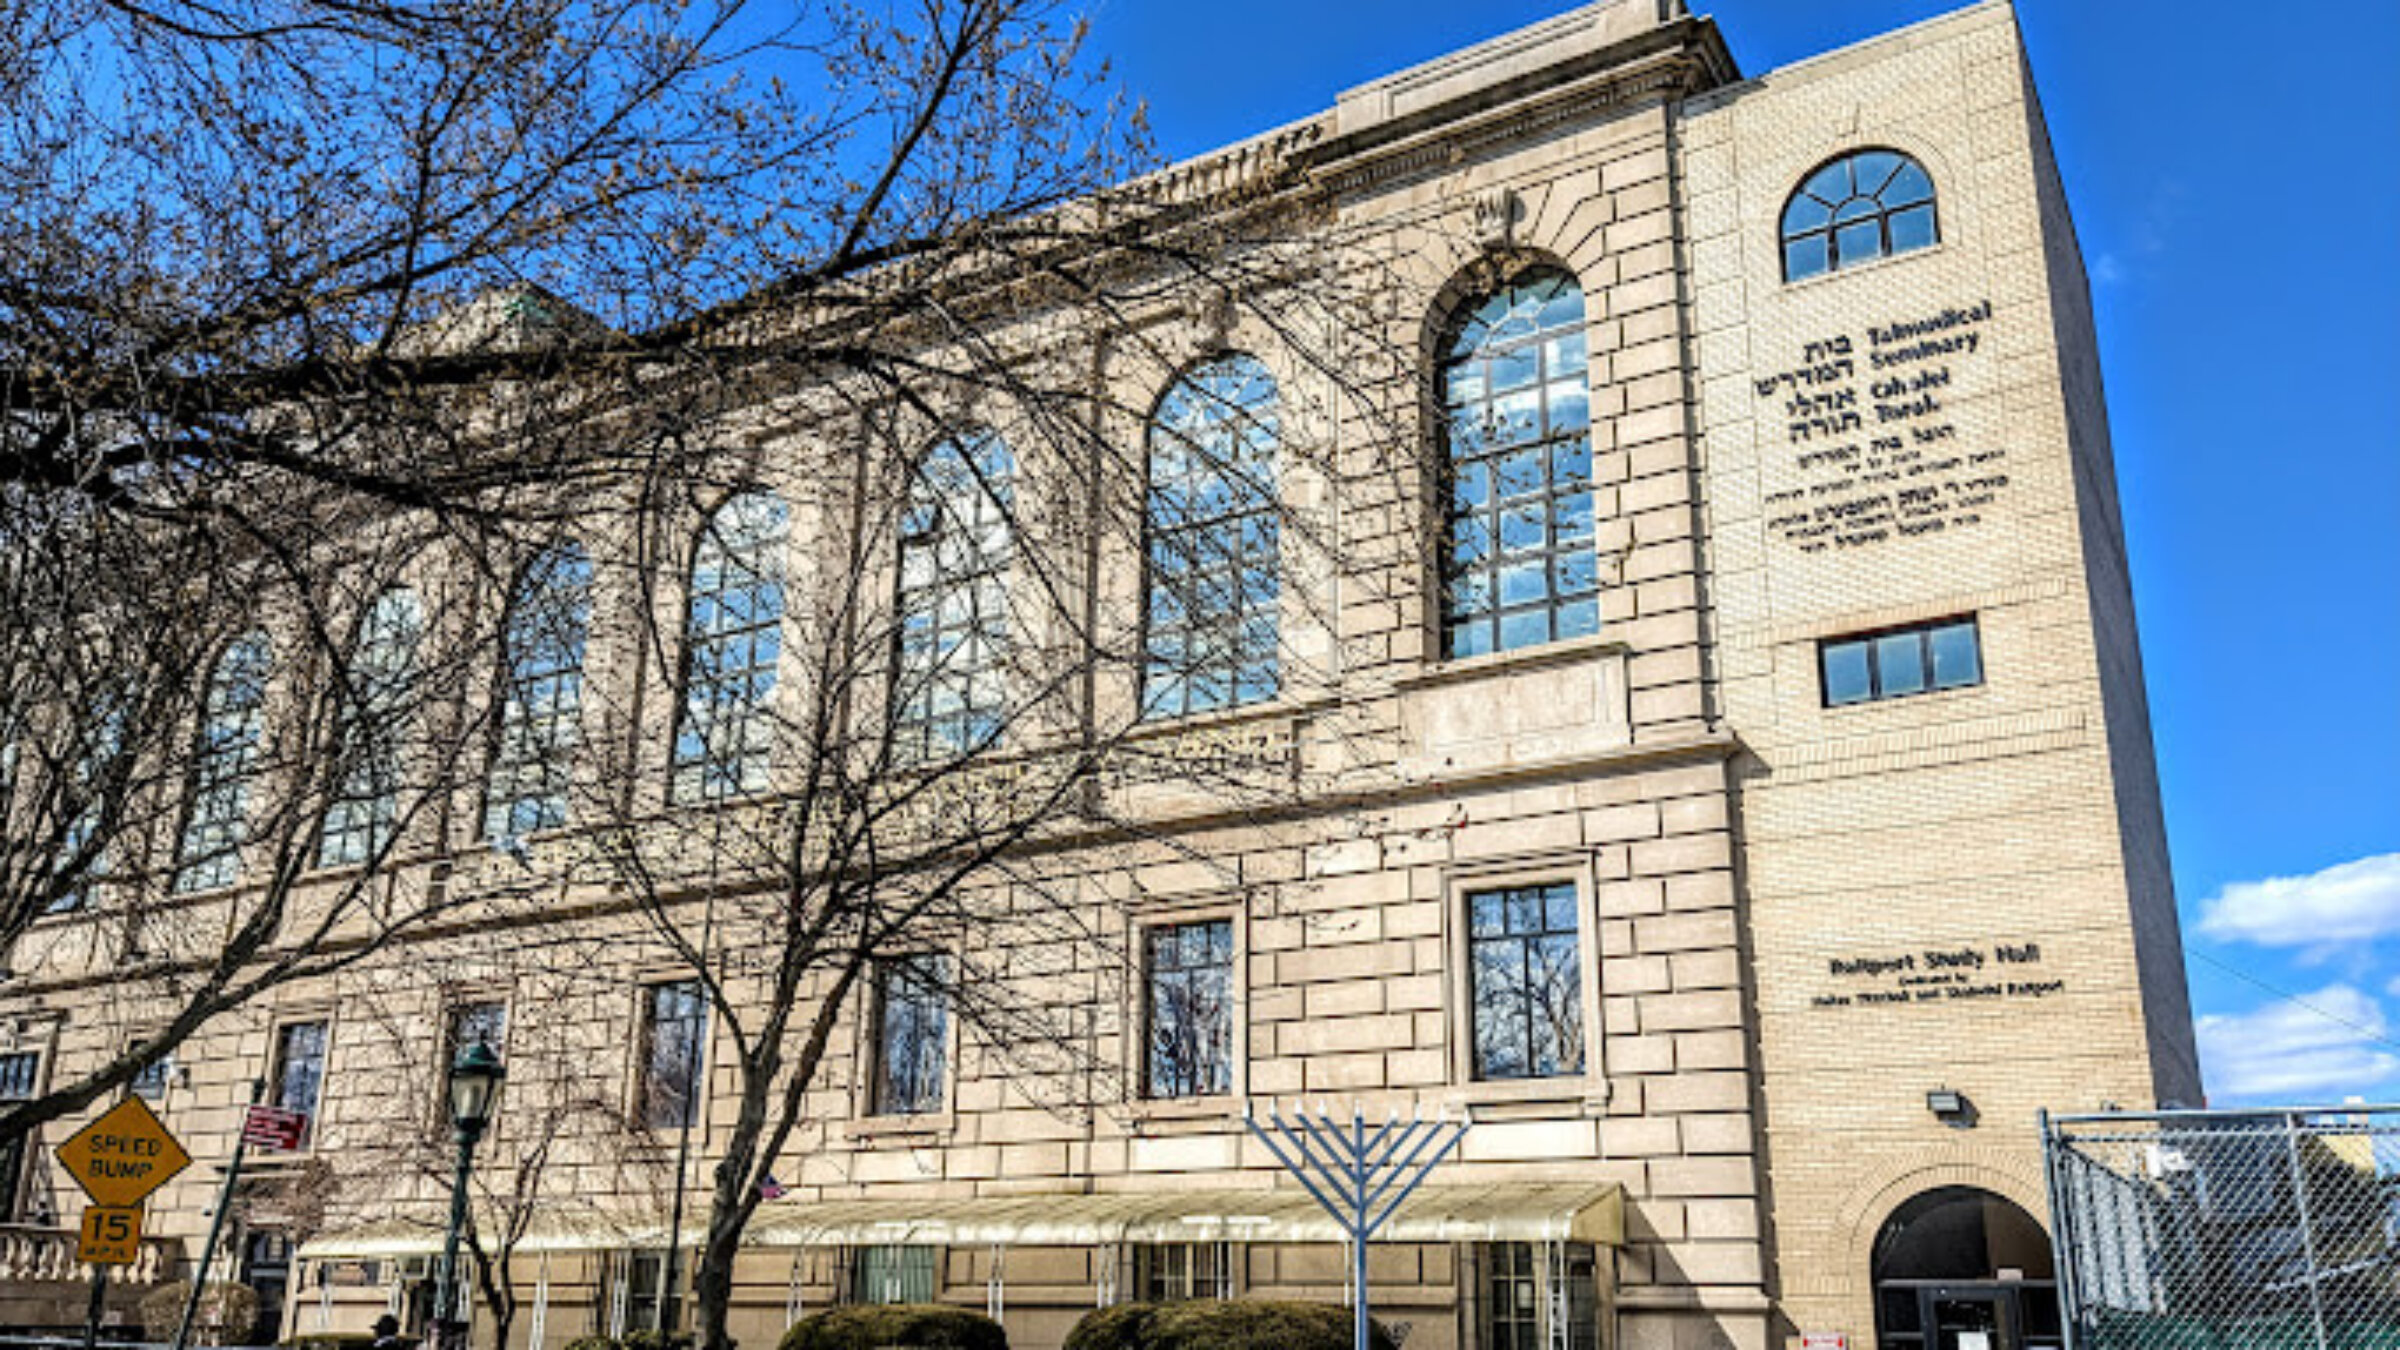 Yeshiva Oholei Torah, housed in the former Brooklyn Jewish Center